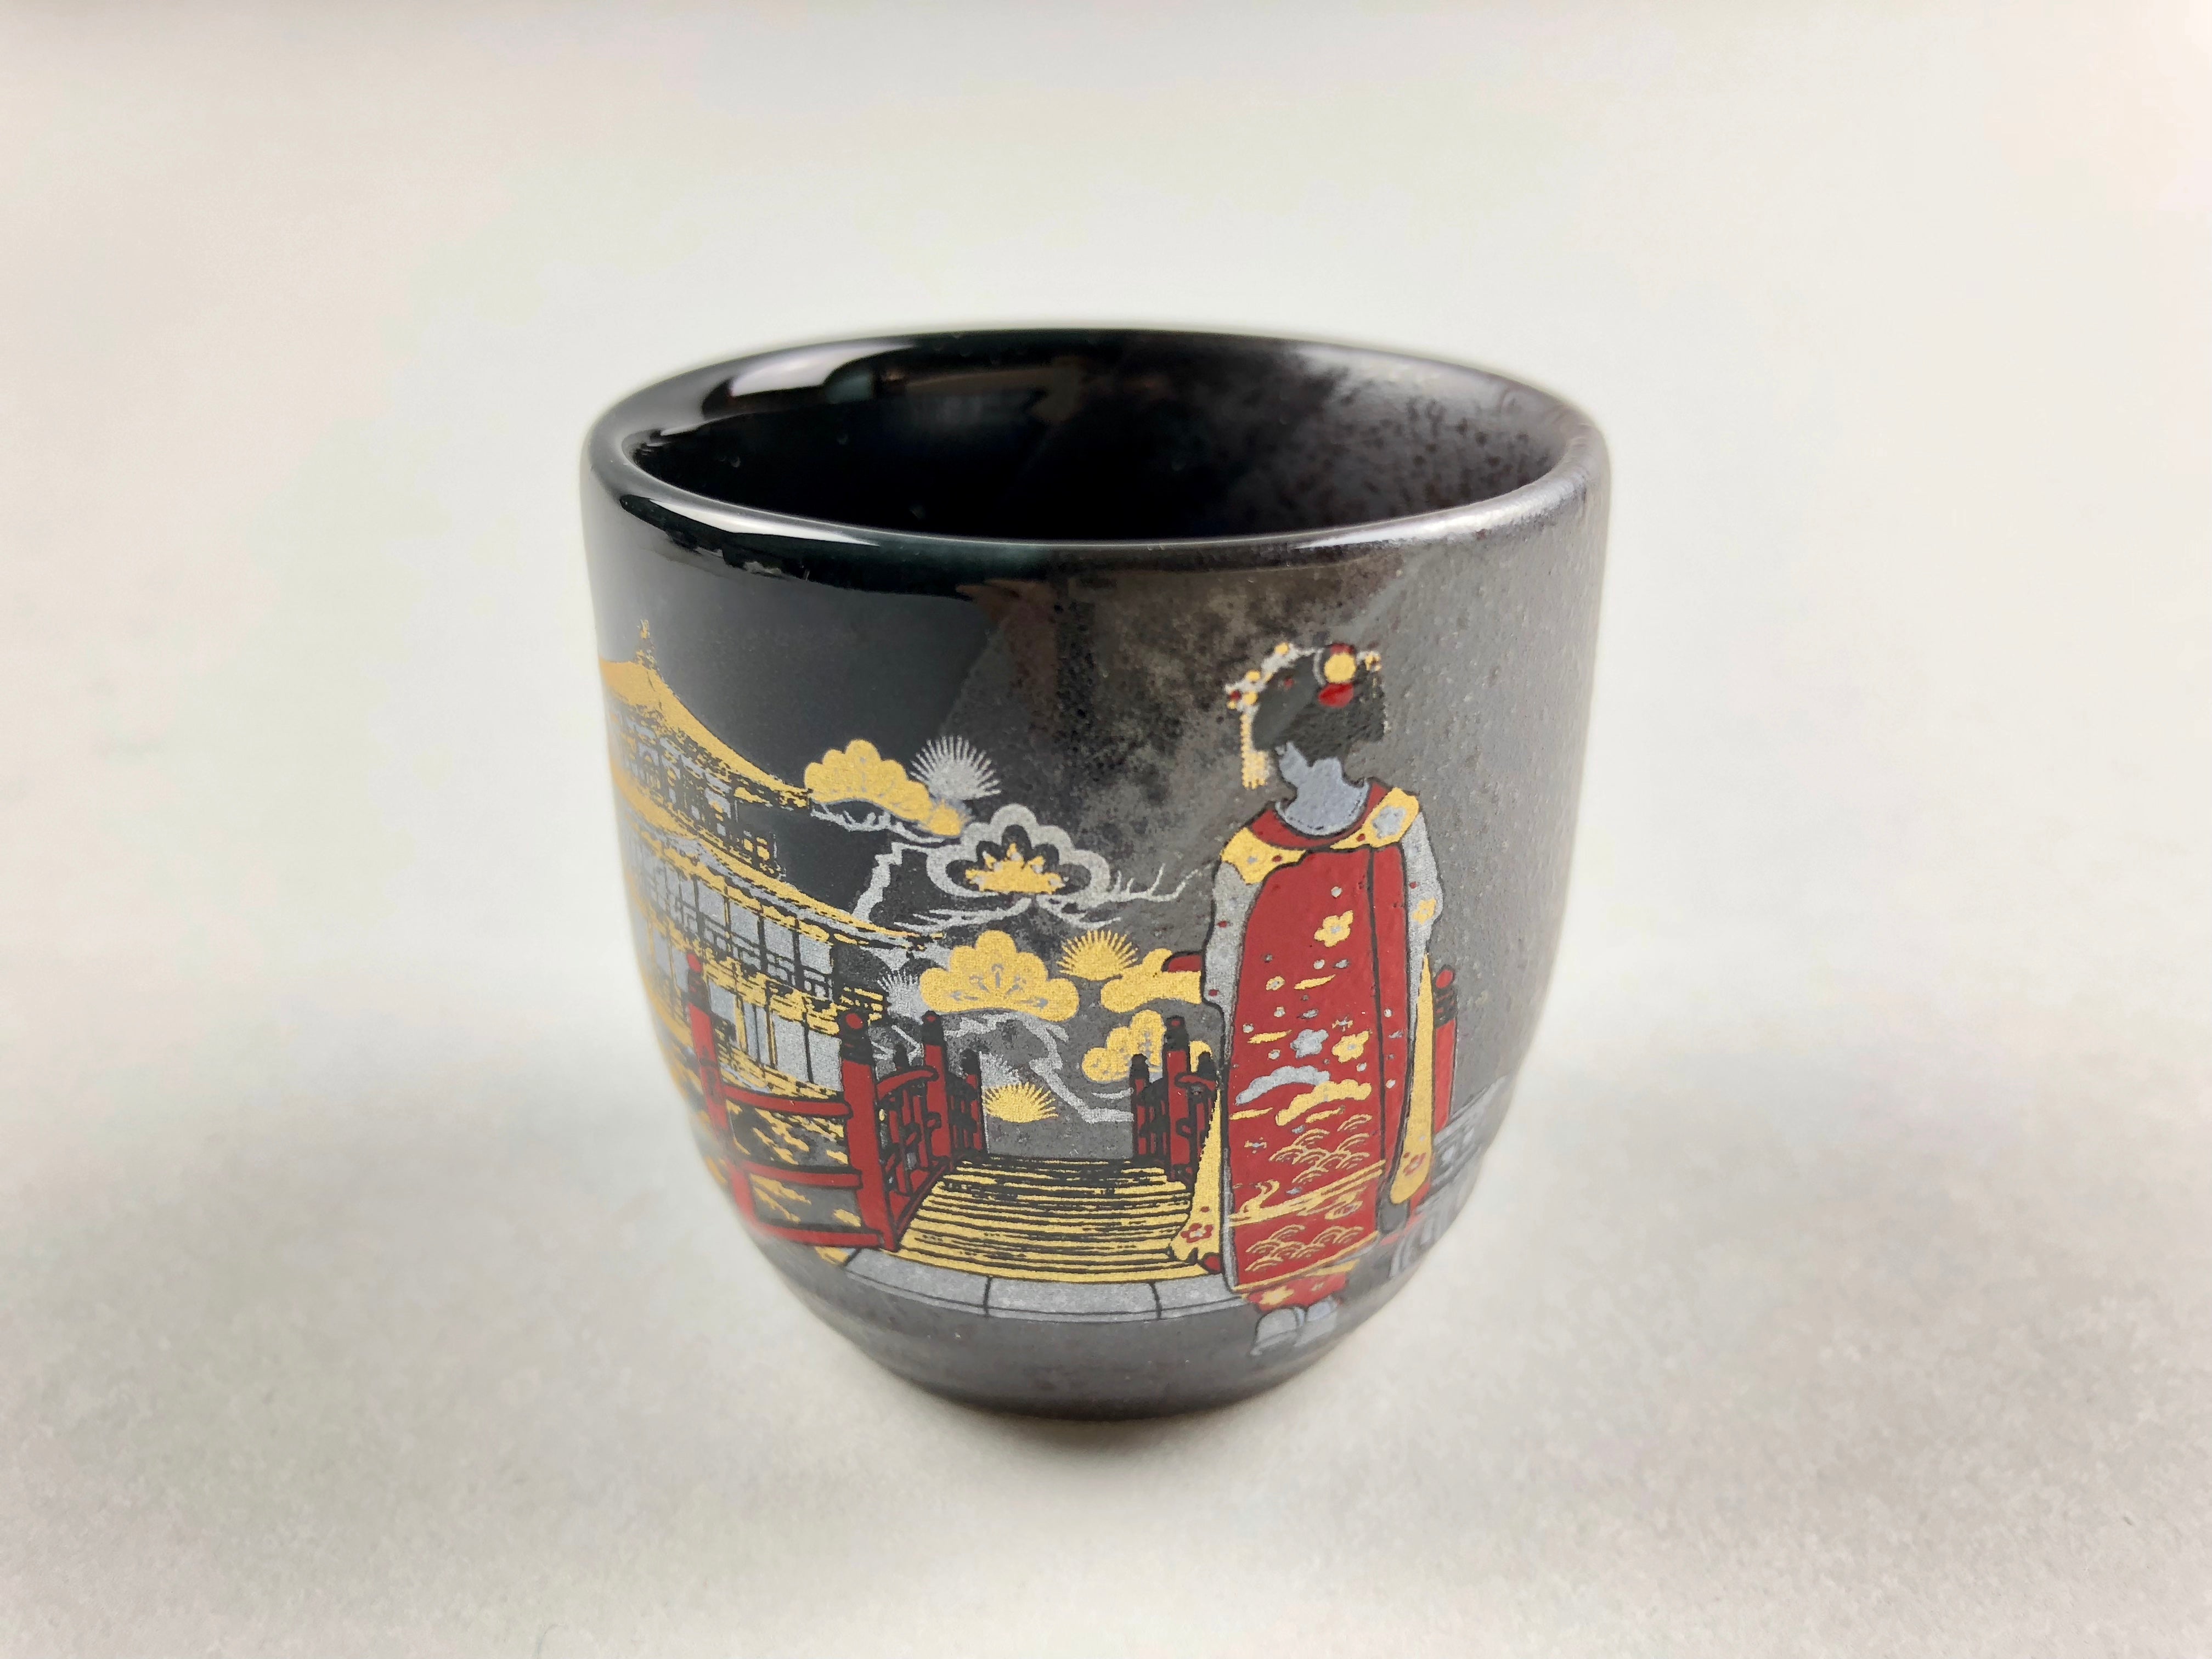 Maiko sake carafe and cup set